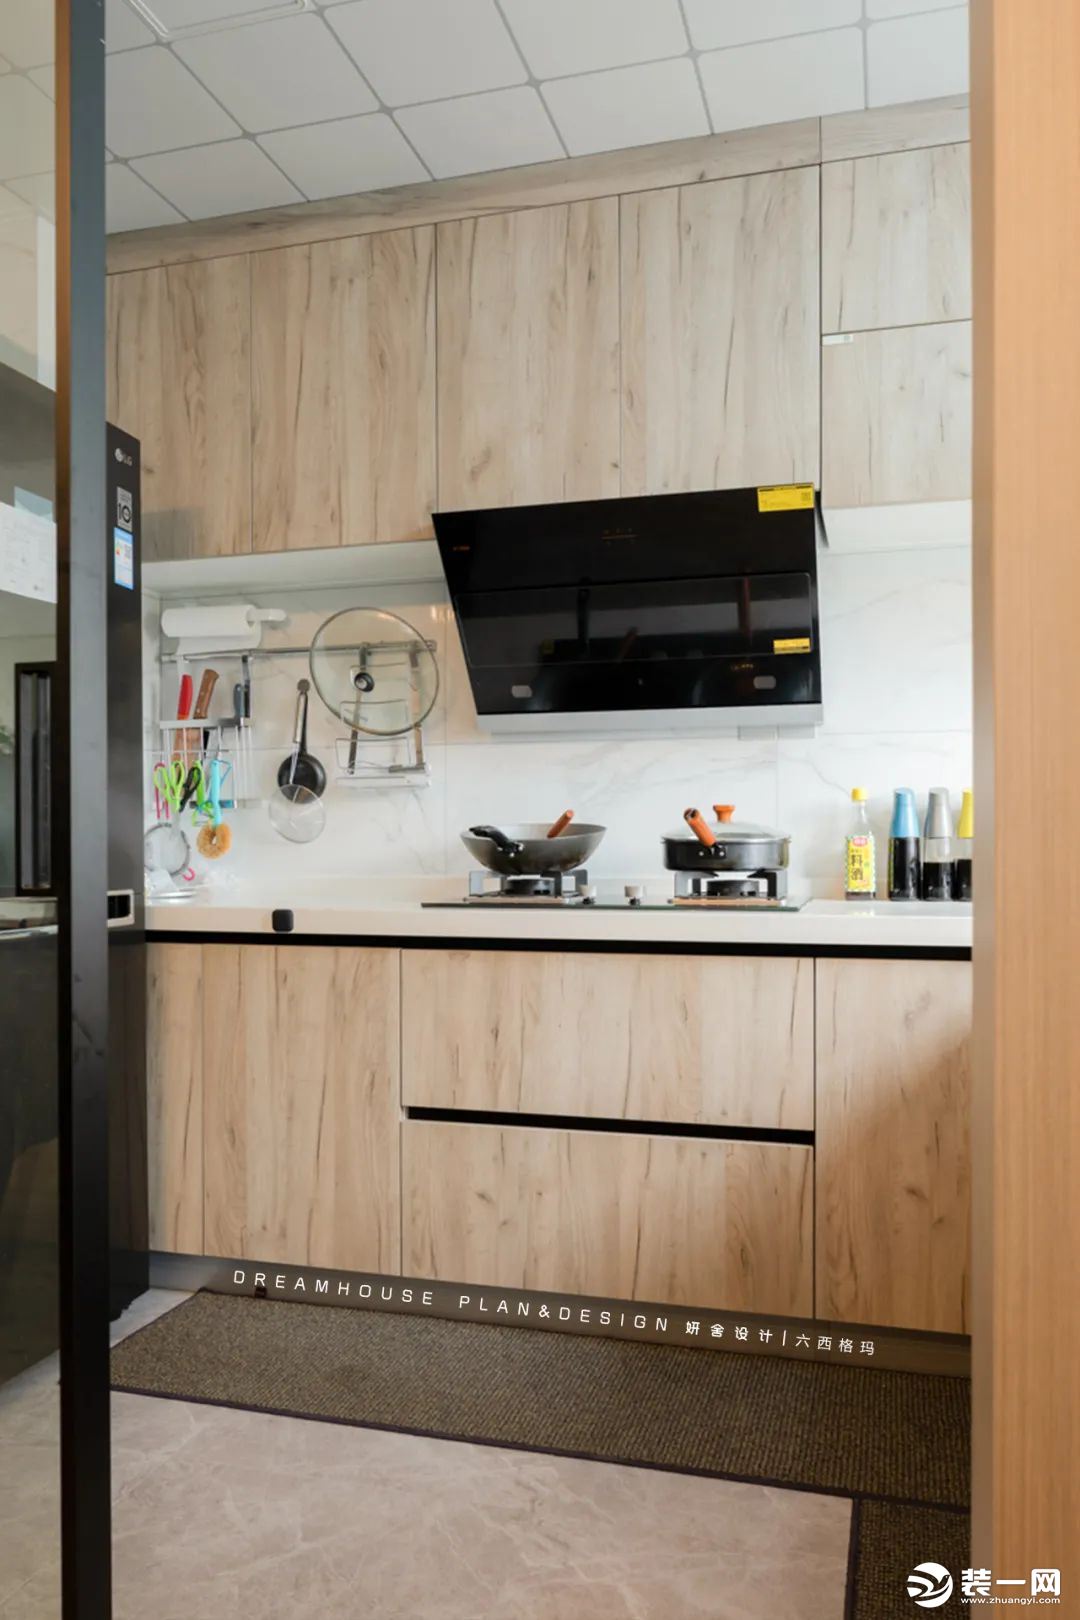 黑色大冰箱摆放在了厨房的一侧，以灰色地砖搭配木色橱柜，过渡到白色台面和墙砖，打造出一个简洁明快的烹饪